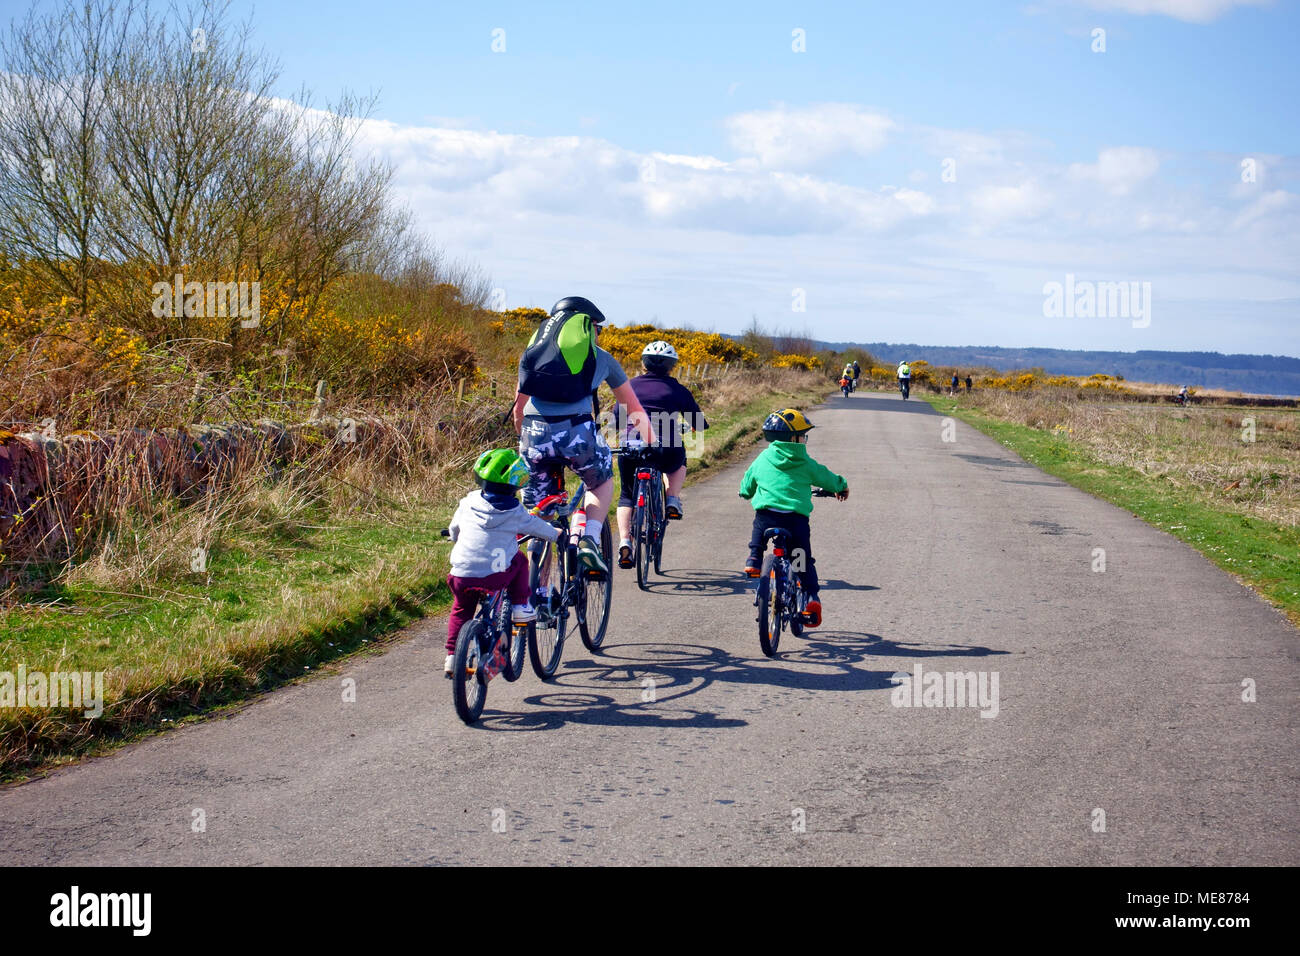 La Scozia, Regno Unito. Xxi Aprile, 2018. Famiglie godendo di escursioni in bicicletta intorno all'Isola di Cumbrae nello Ayrshire in Scozia. Credito: PictureScotland/Alamy Live News Foto Stock